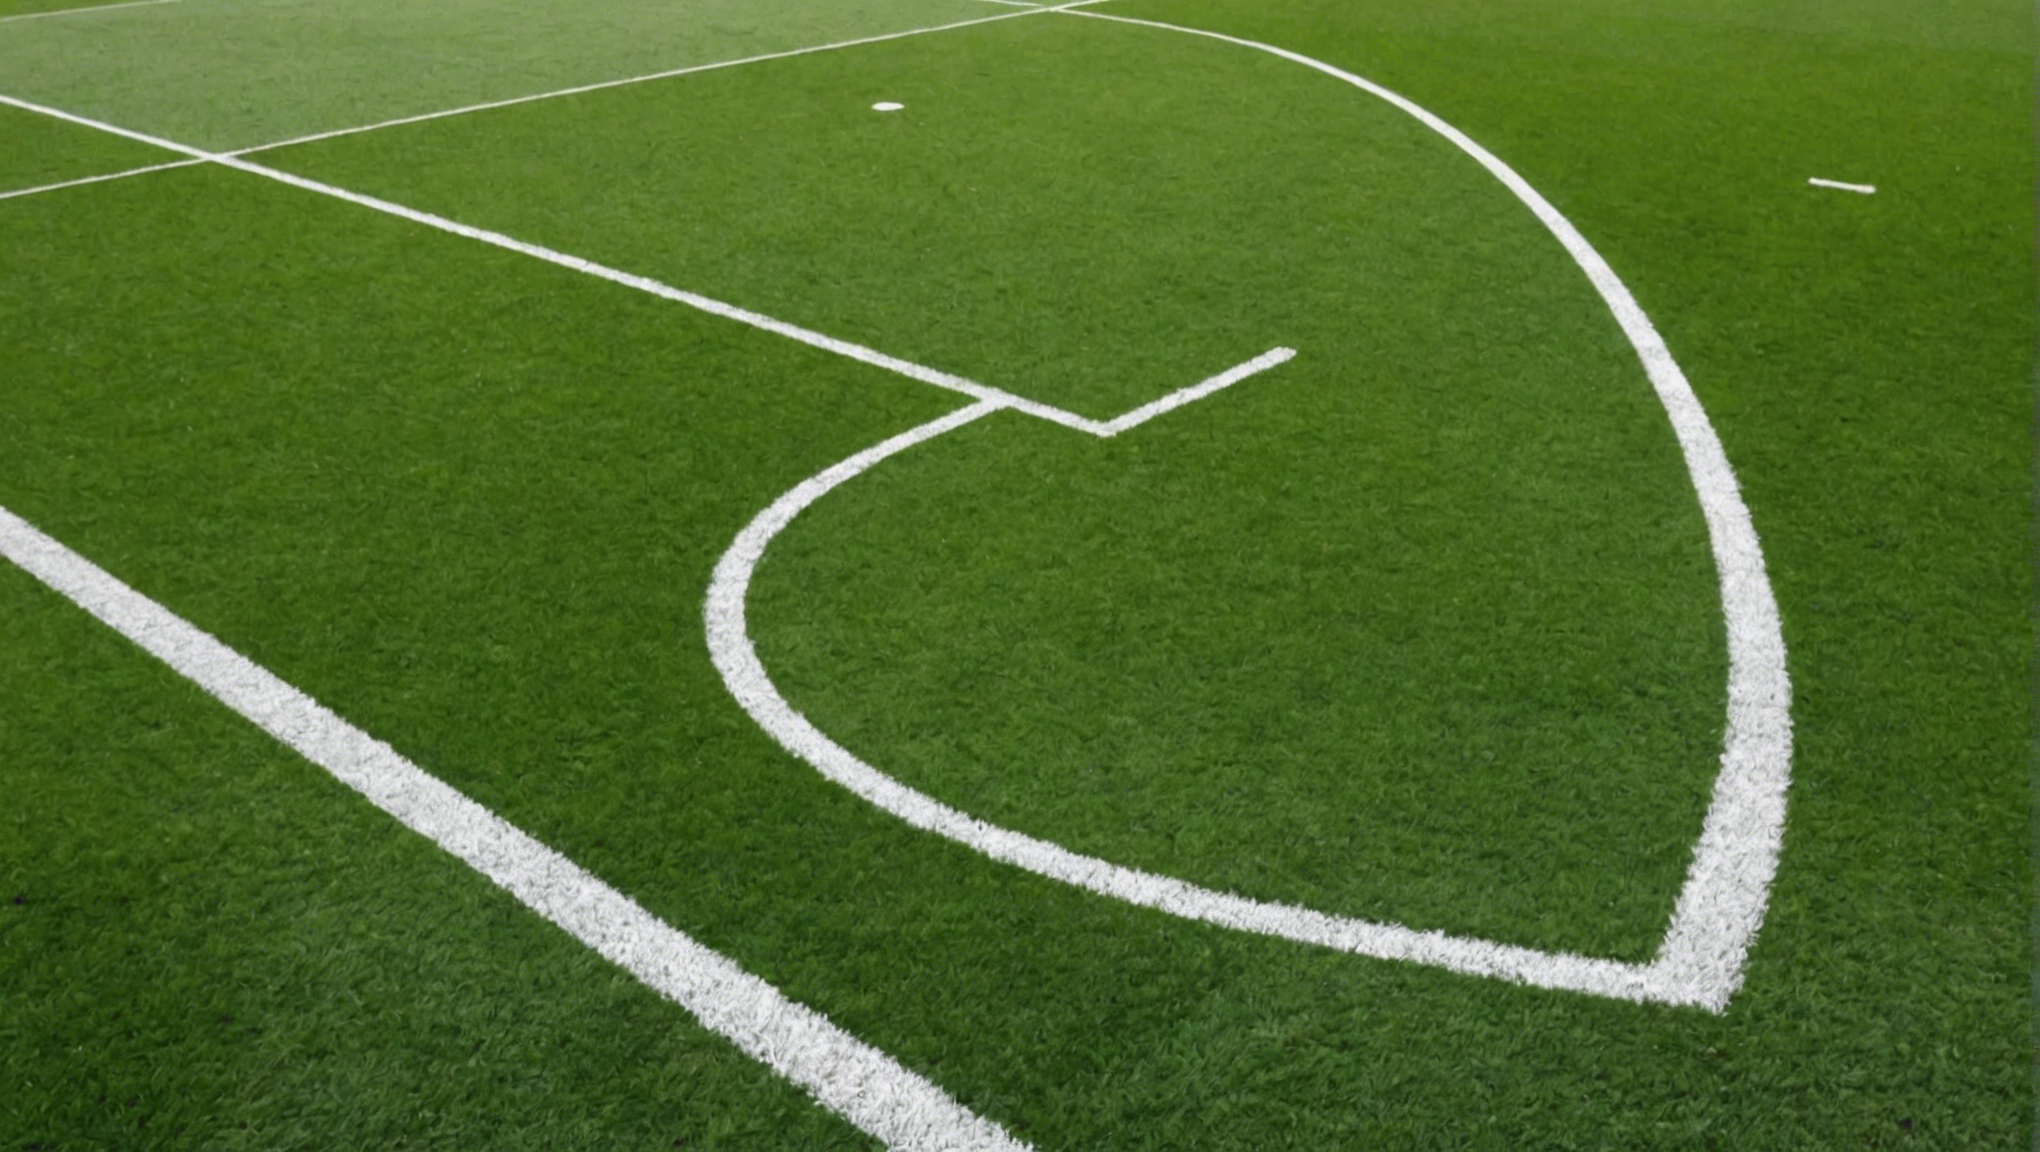 découvrez comment estimer le coût du terrassement d'un terrain de football et planifiez votre projet avec précision grâce à nos conseils et astuces.